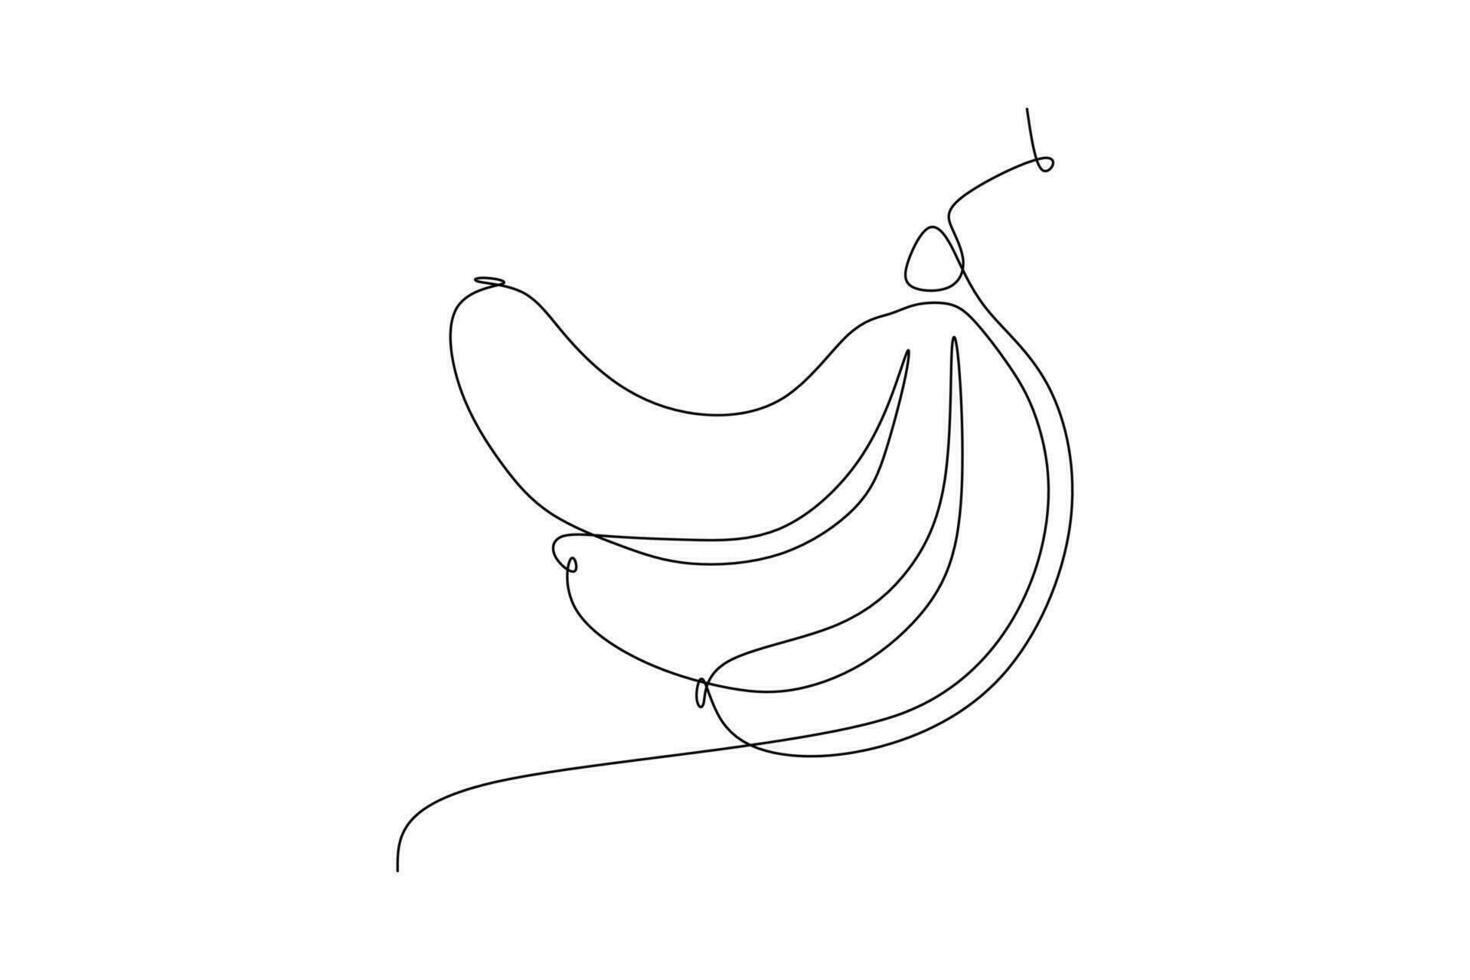 kontinuerlig ett linje teckning av banan frukt isolerat på vit bakgrund. vektor